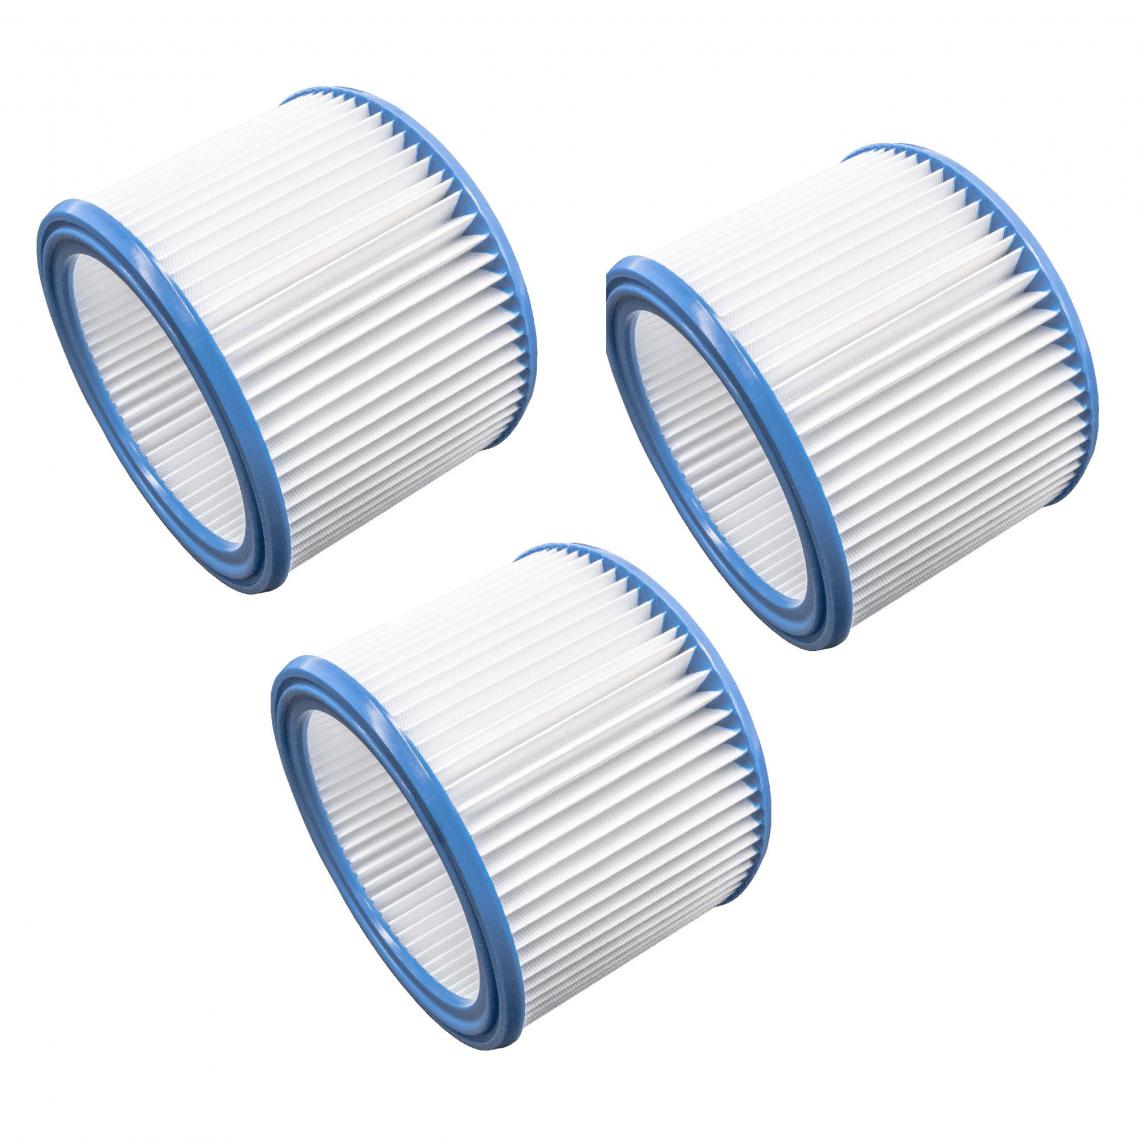 Vhbw - vhbw Set de filtres 3x Filtre plissé remplacement pour Nilfisk 302000461, 302000490 pour aspirateur à sec ou humide - Filtre à cartouche - Accessoire entretien des sols